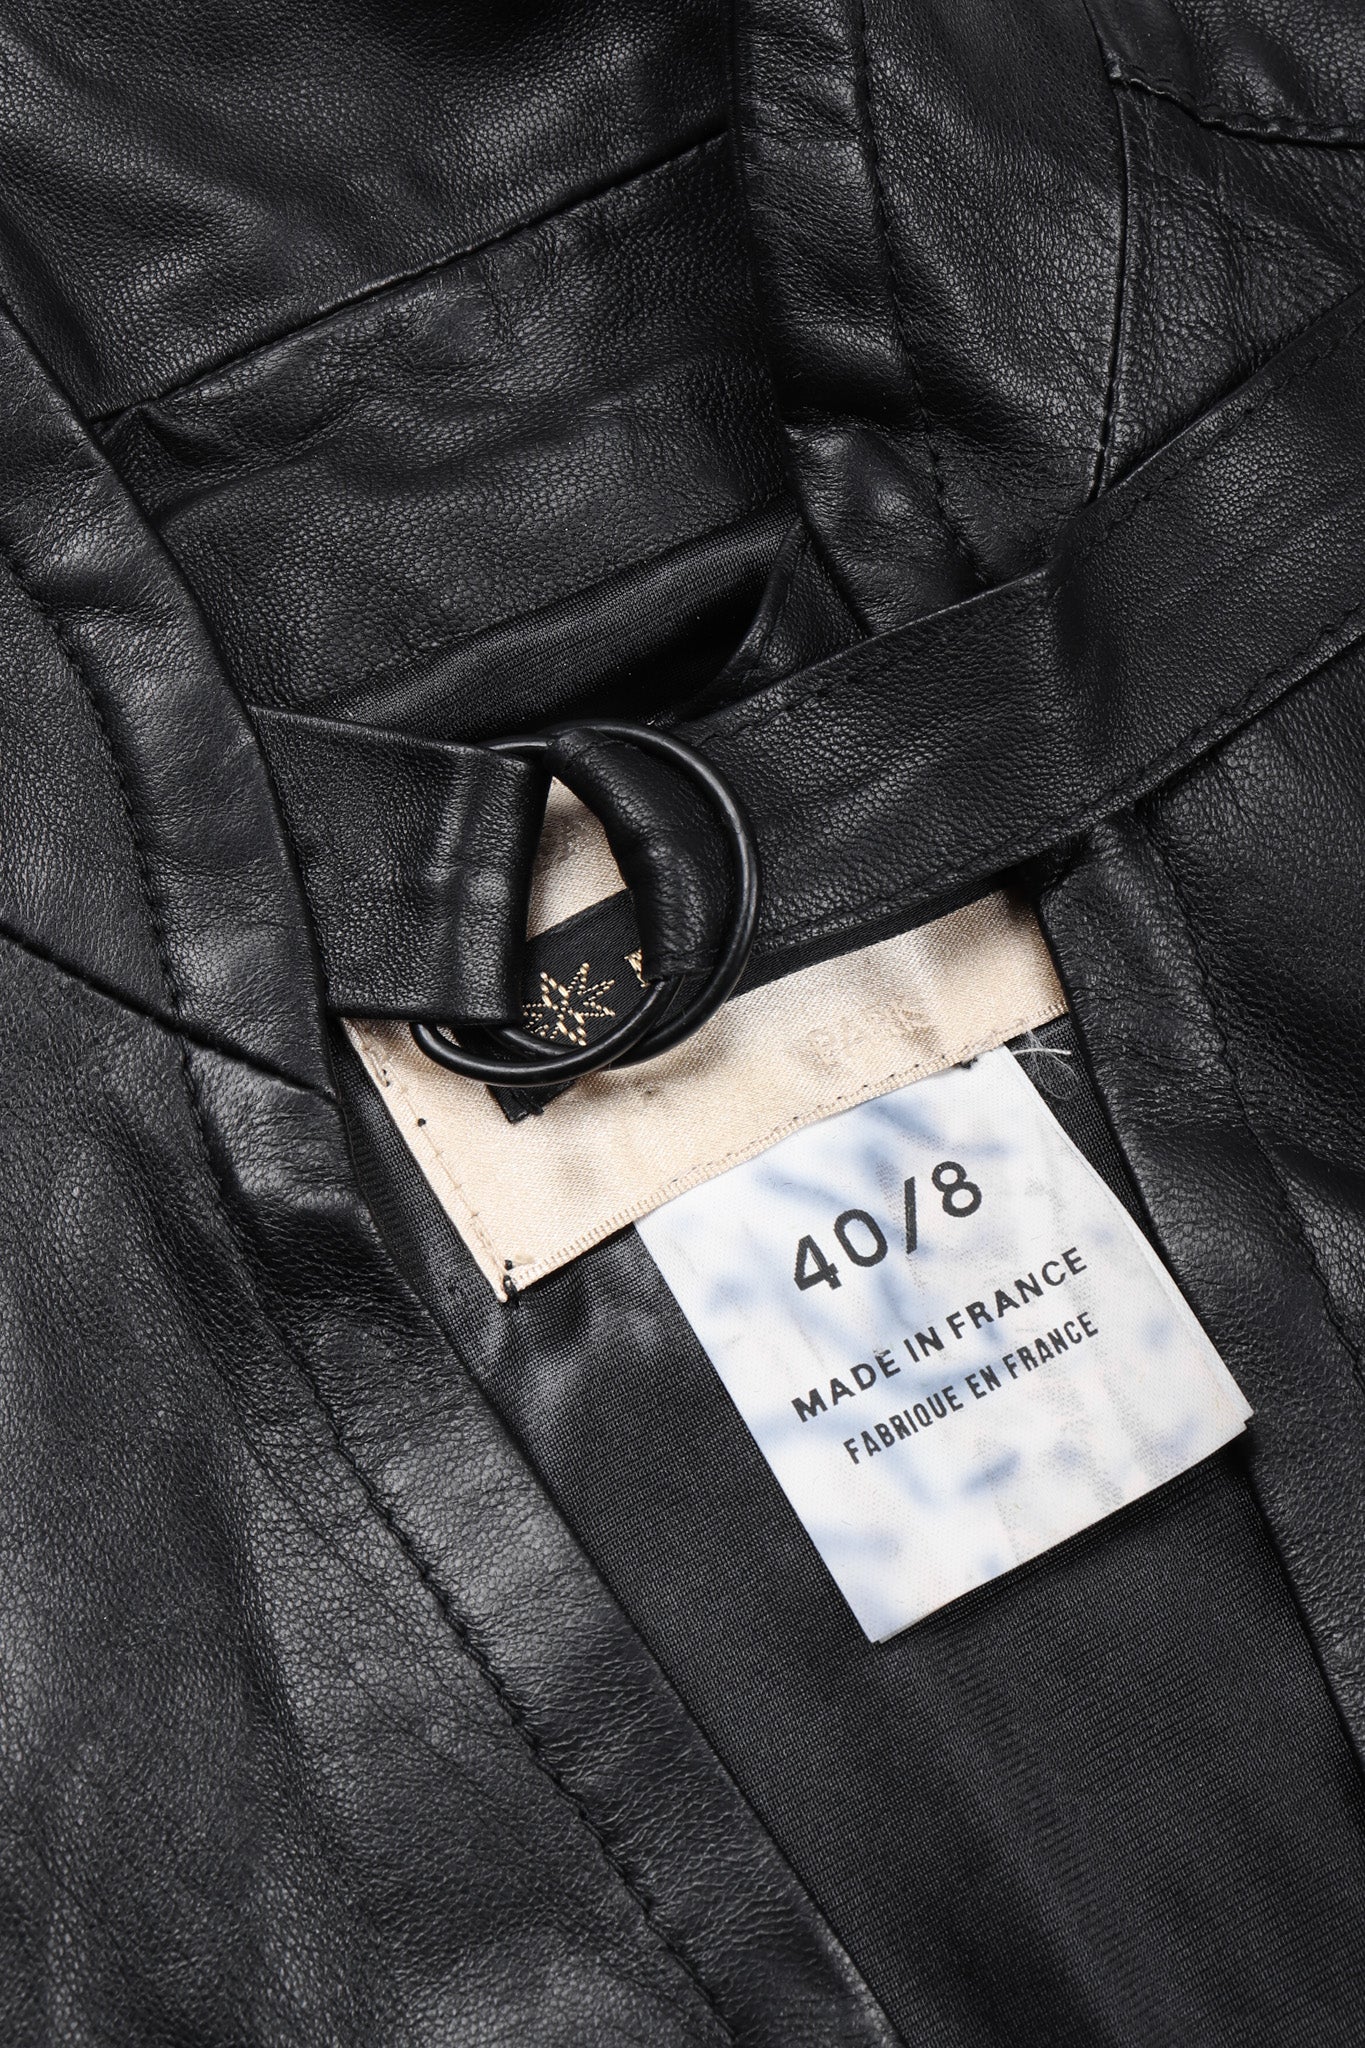 Recess Los Angeles Vintage Plein Sud Leather Choker Neck Strap Vest